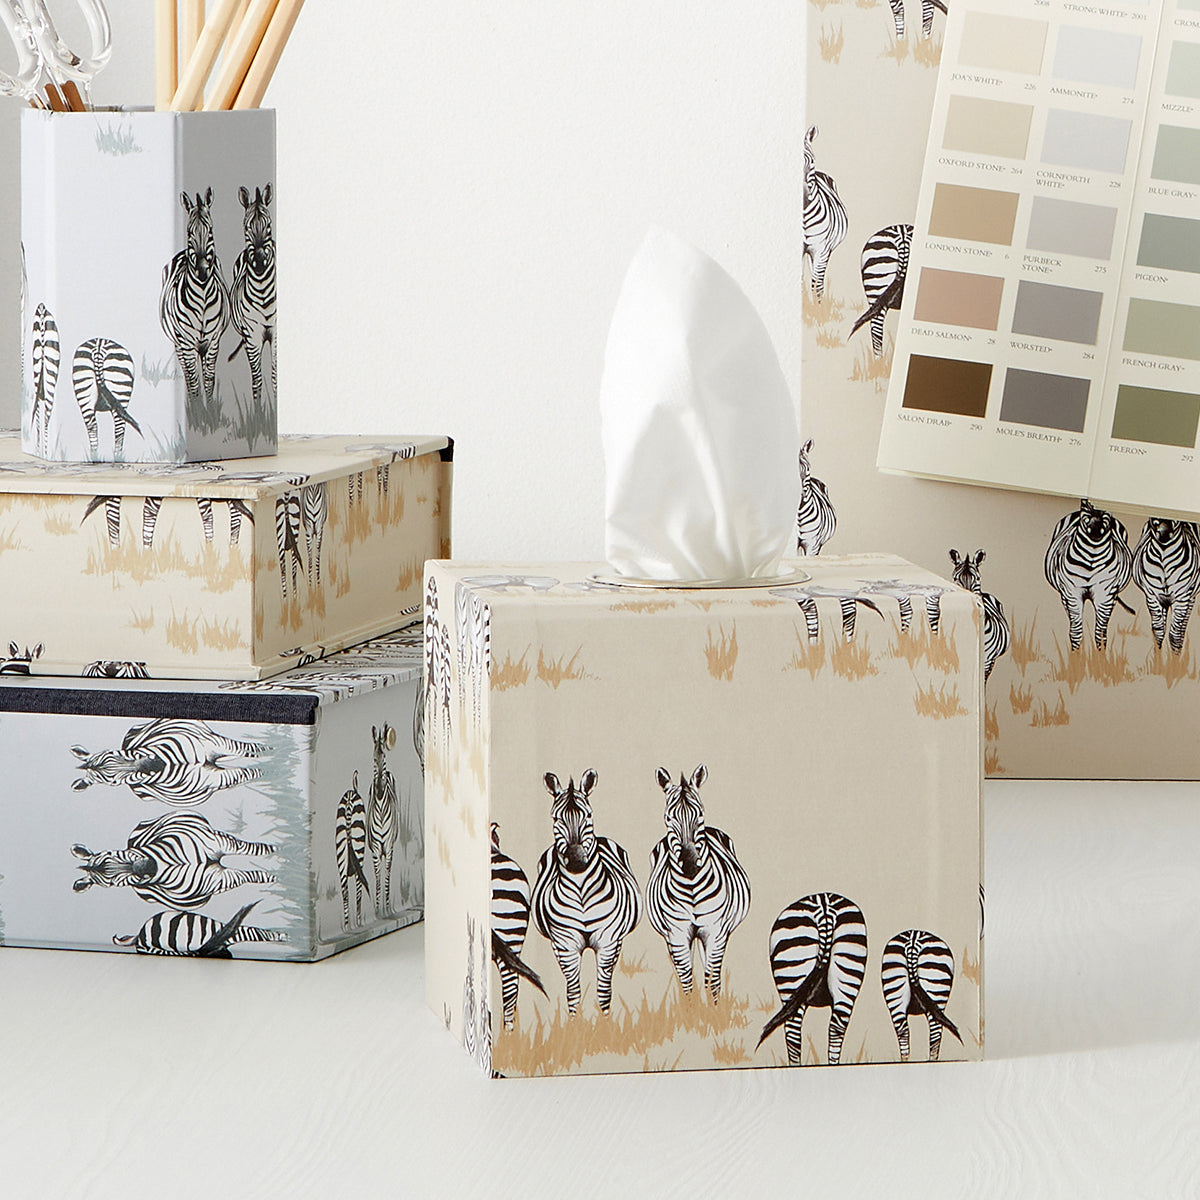 Juliet Travers Tissue Boxes